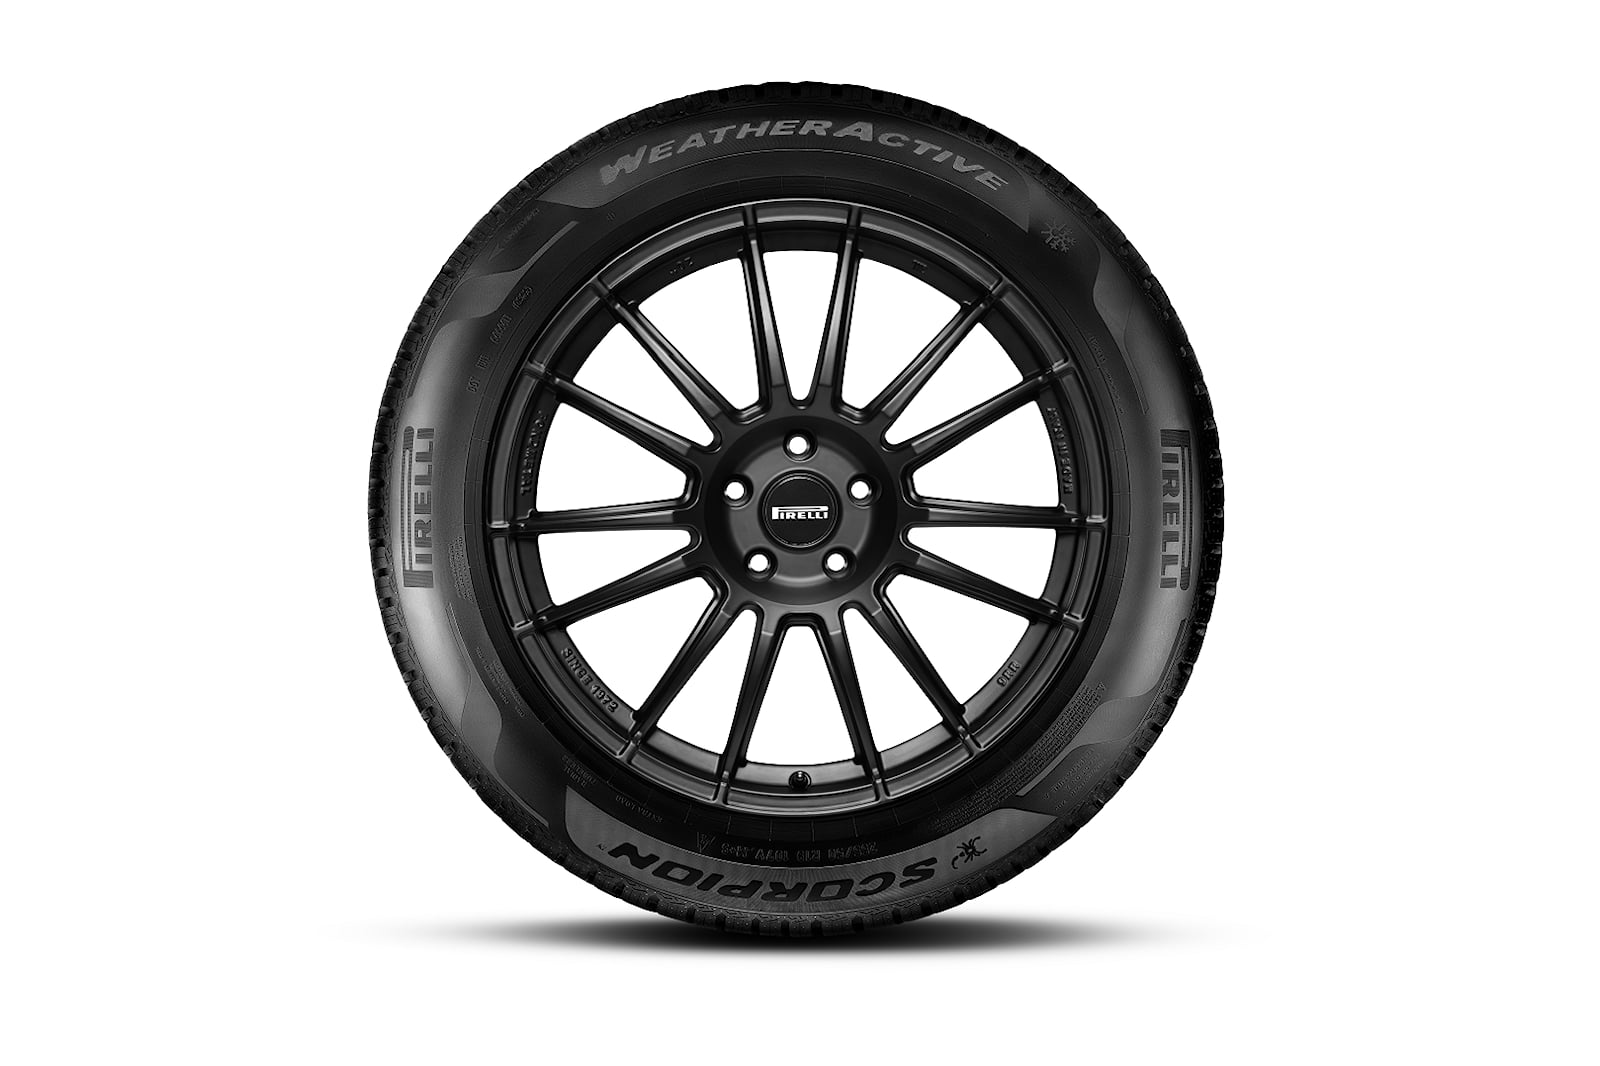 design-of-new-pirelli-tires